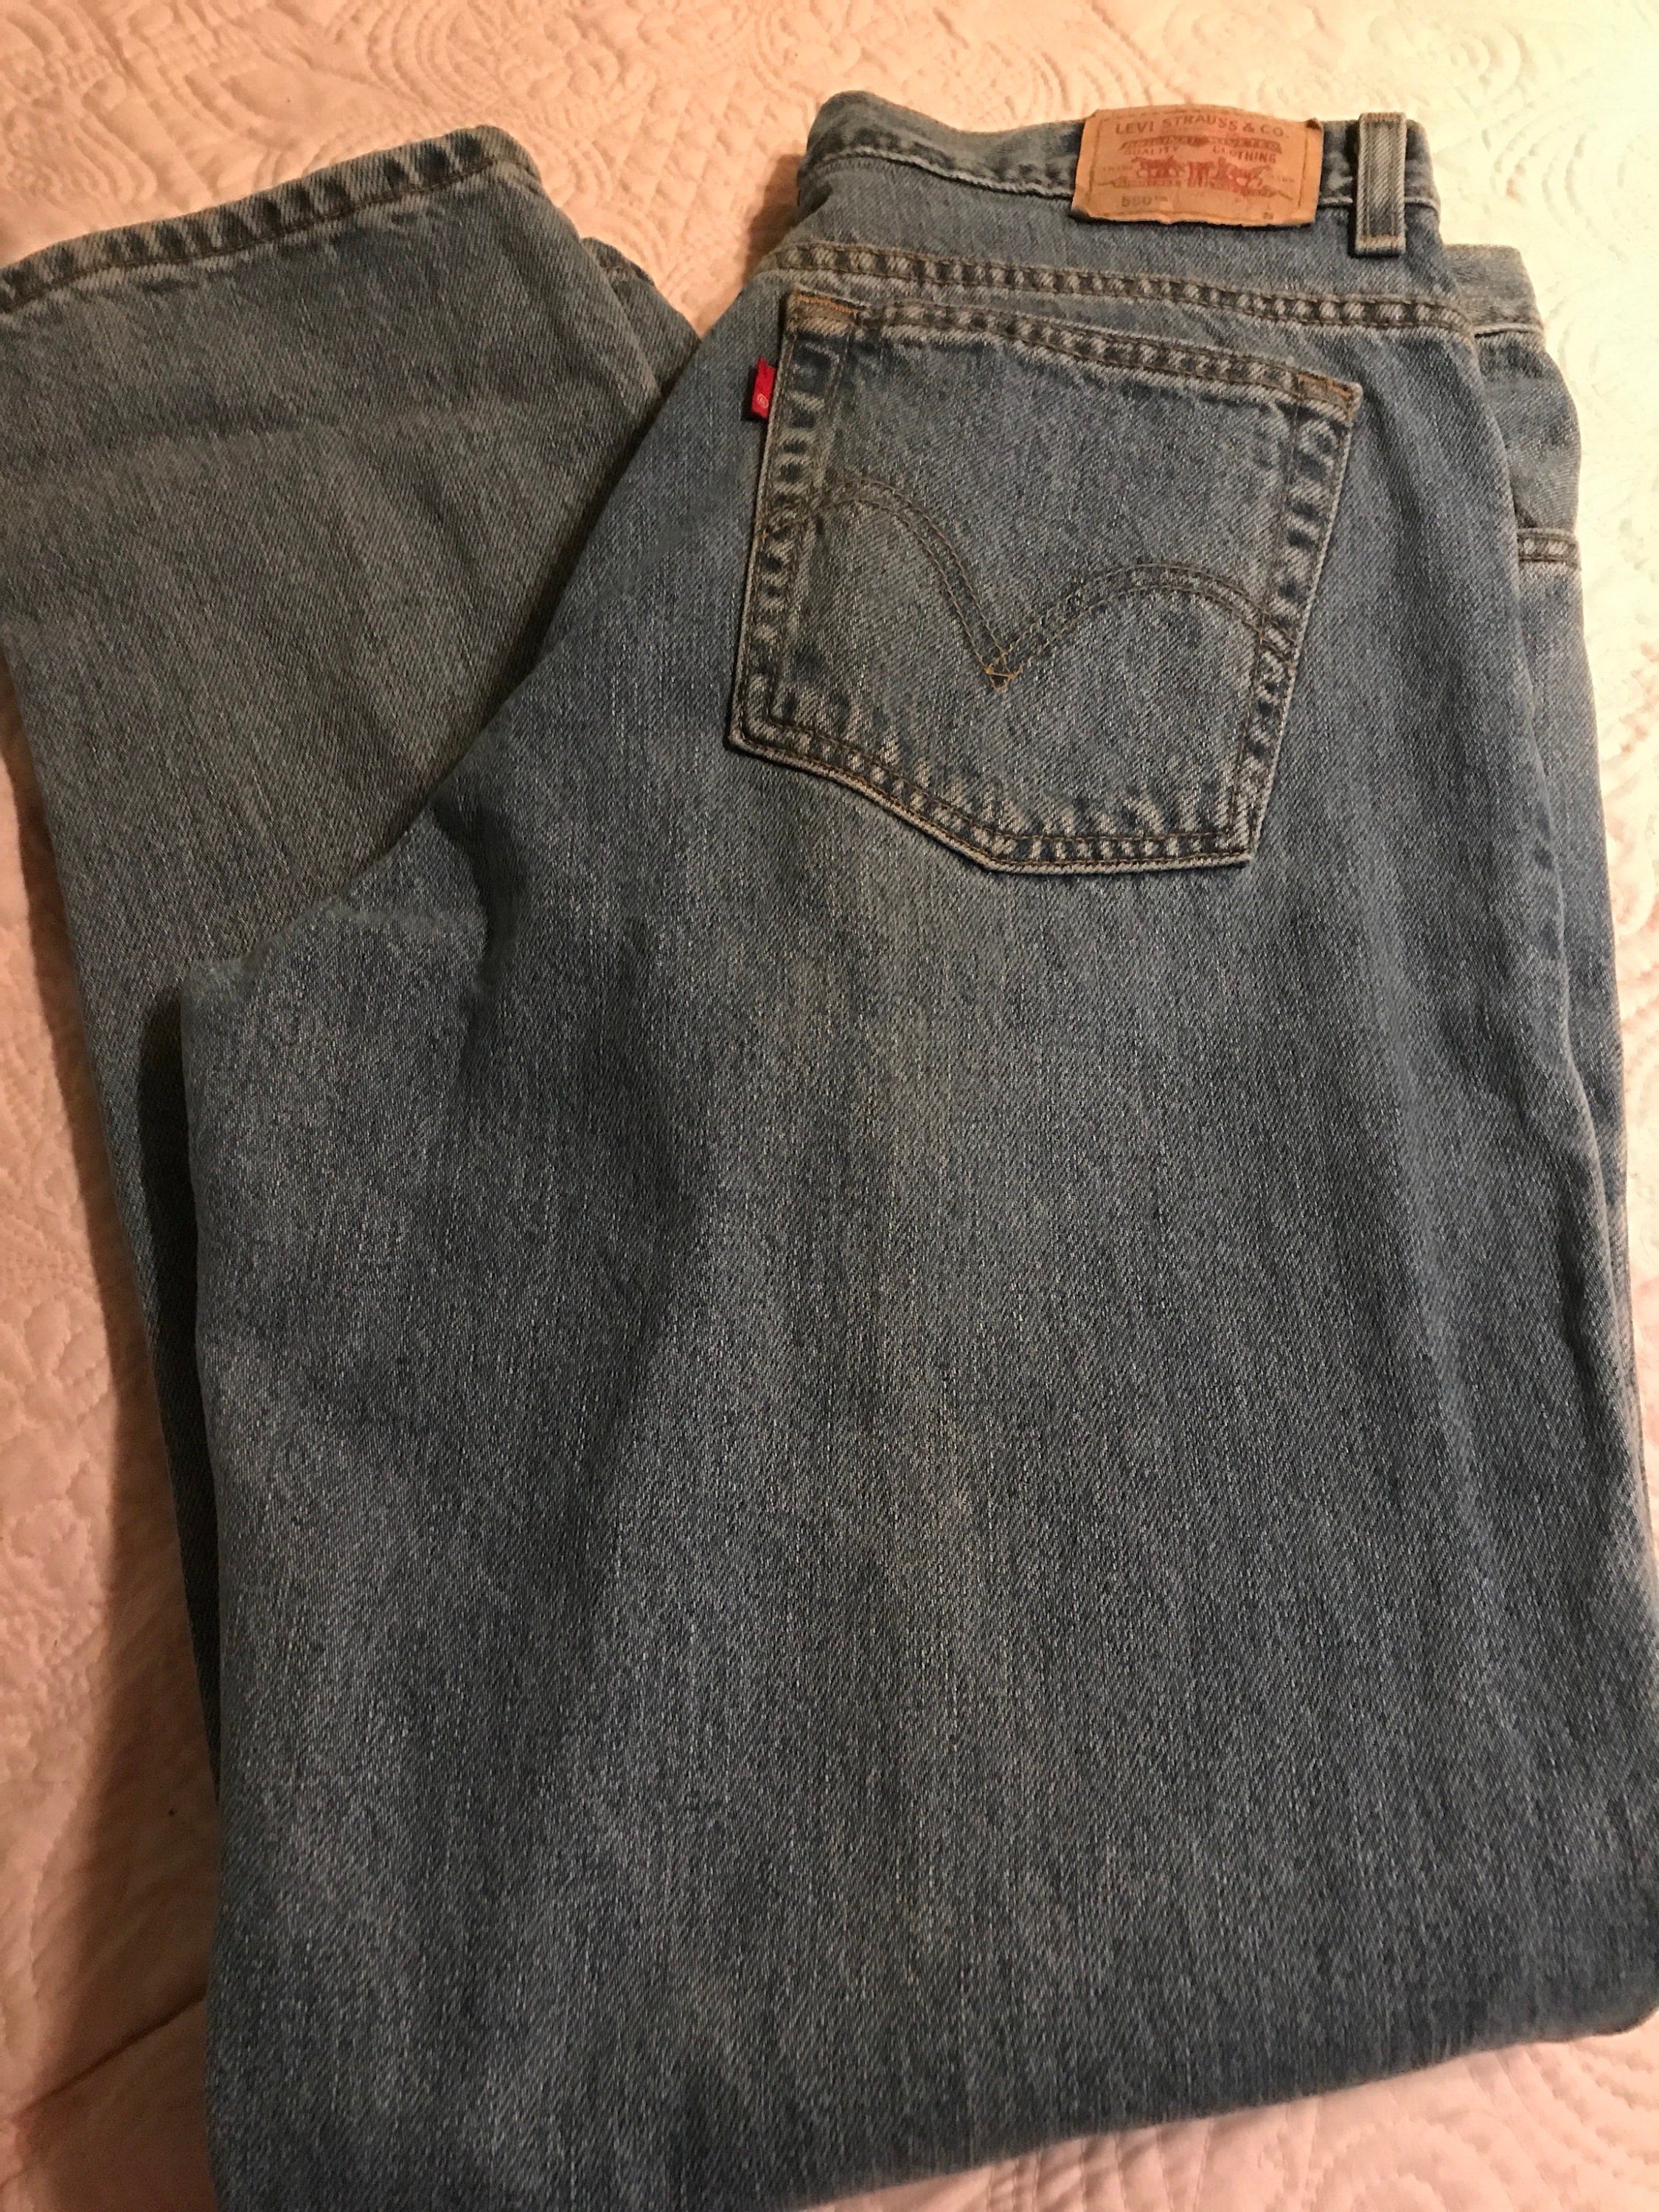 Vintage Levi's Jeans. 90's Denim Jeans. Levi's Blue Jeans. Vintage Levi's  Mom Jeans. Relaxed Fit, Straight Leg Blue Jeans. Levi Red Tab Jean